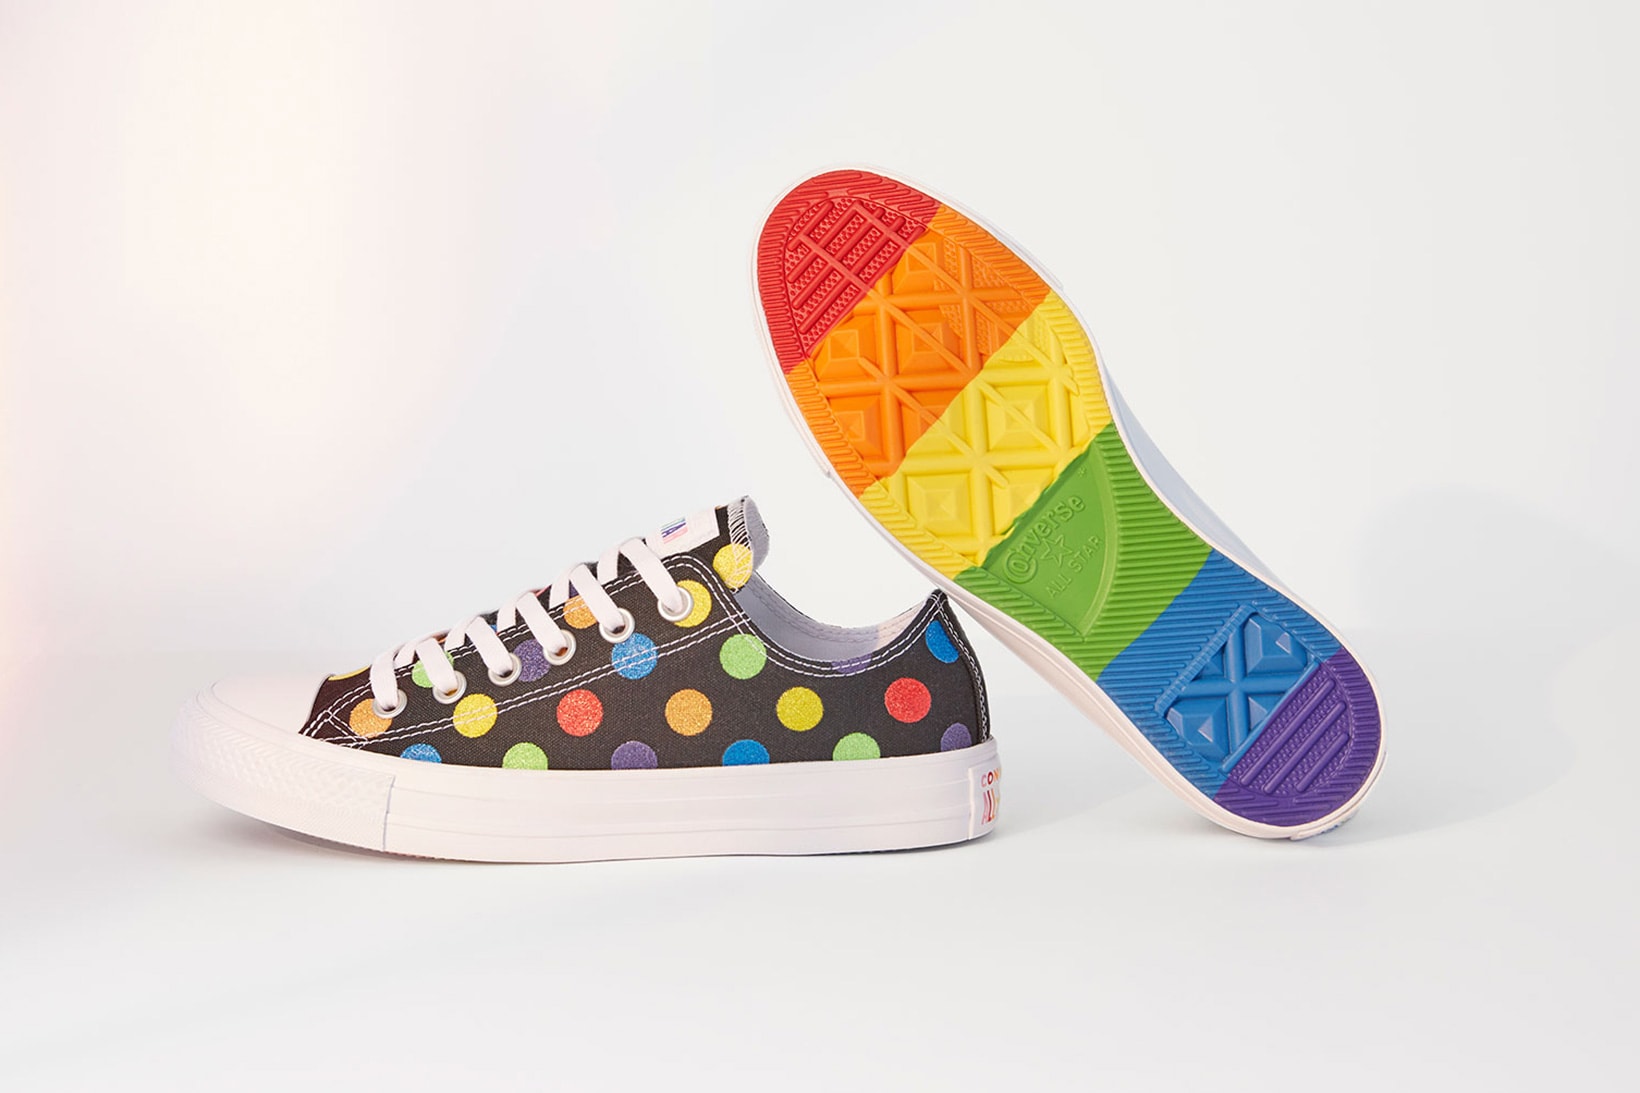 Converse Miley Cyrus Pride Designed Collection 2018 june footwear apparel